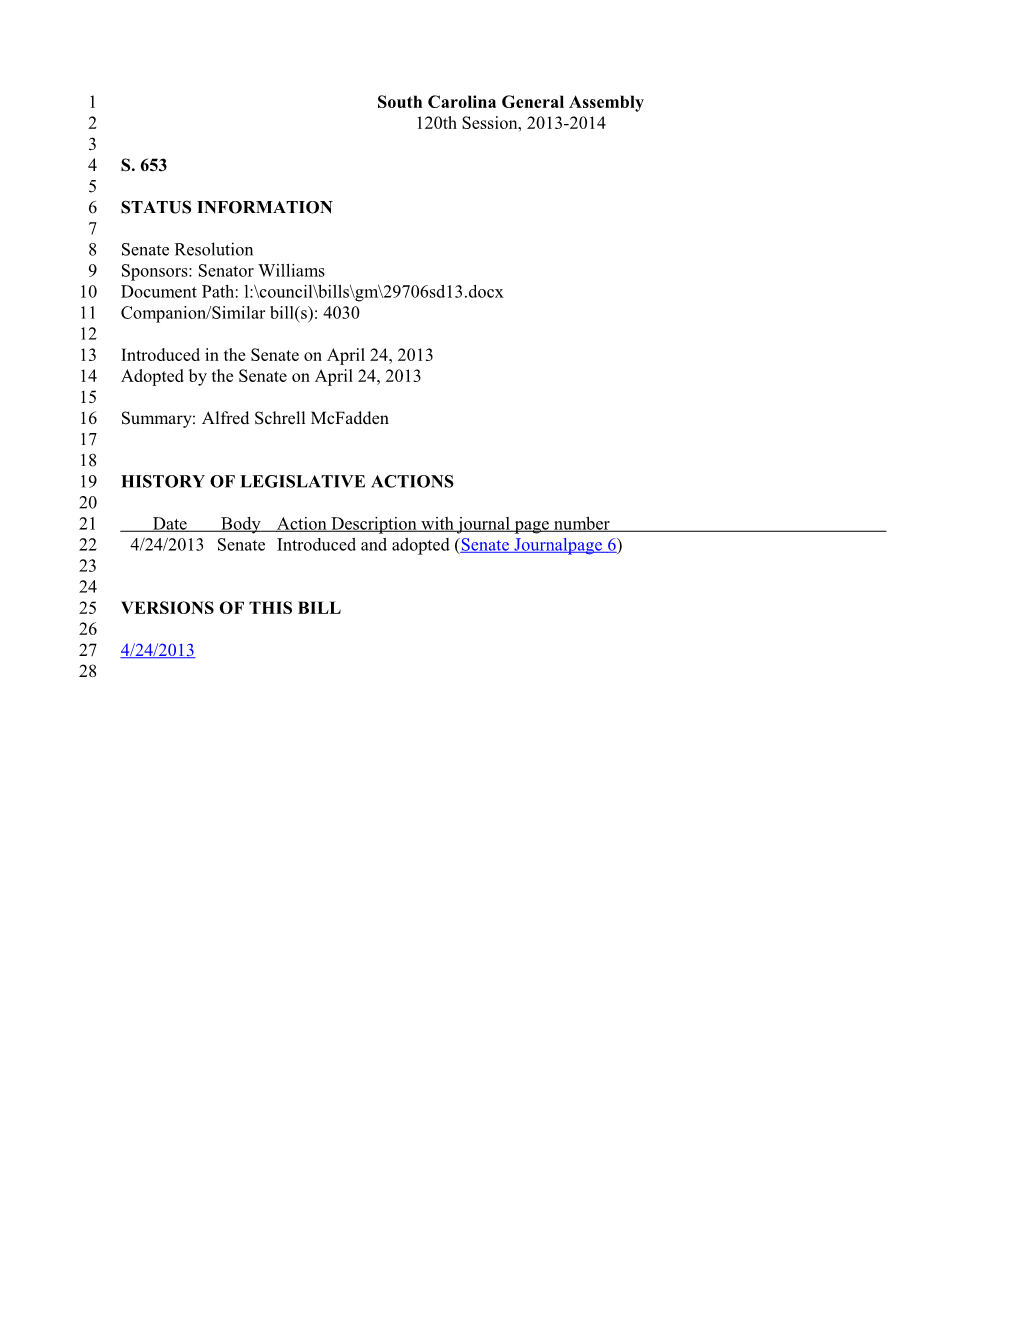 2013-2014 Bill 653: Alfred Schrell Mcfadden - South Carolina Legislature Online